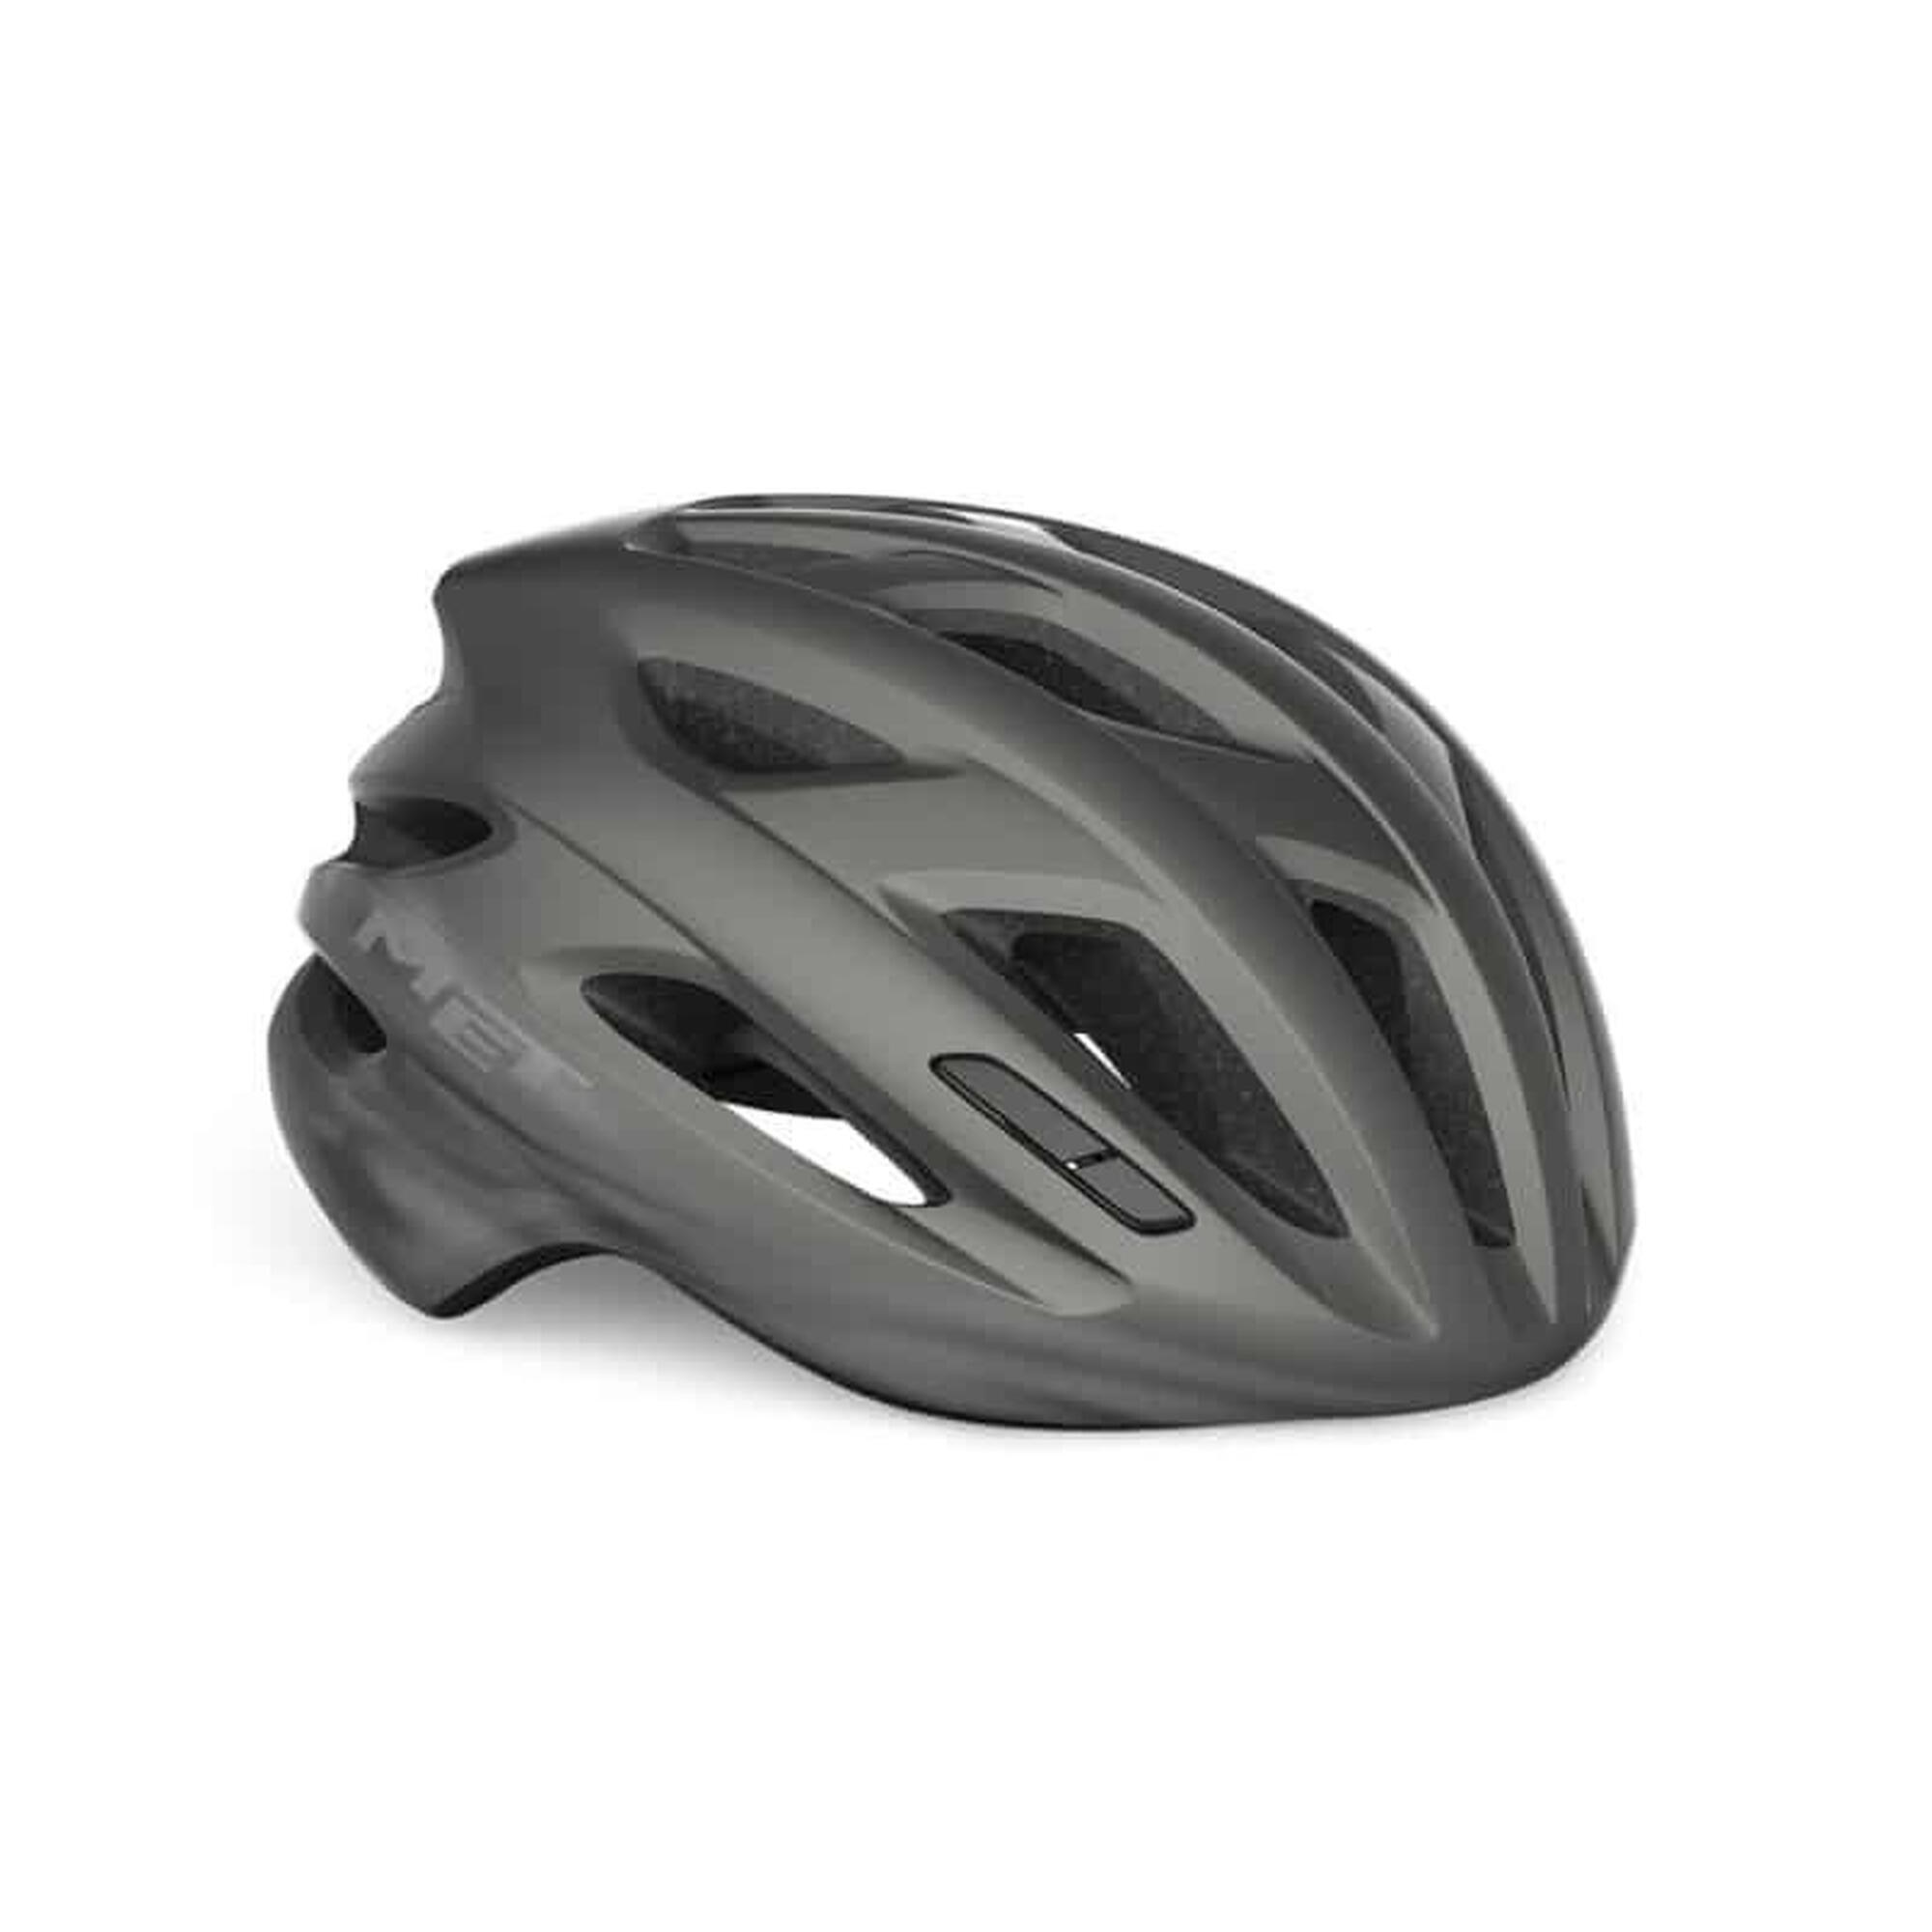 MET IDOLO MIPS Titanium UN Road Bike Helmet 1/6